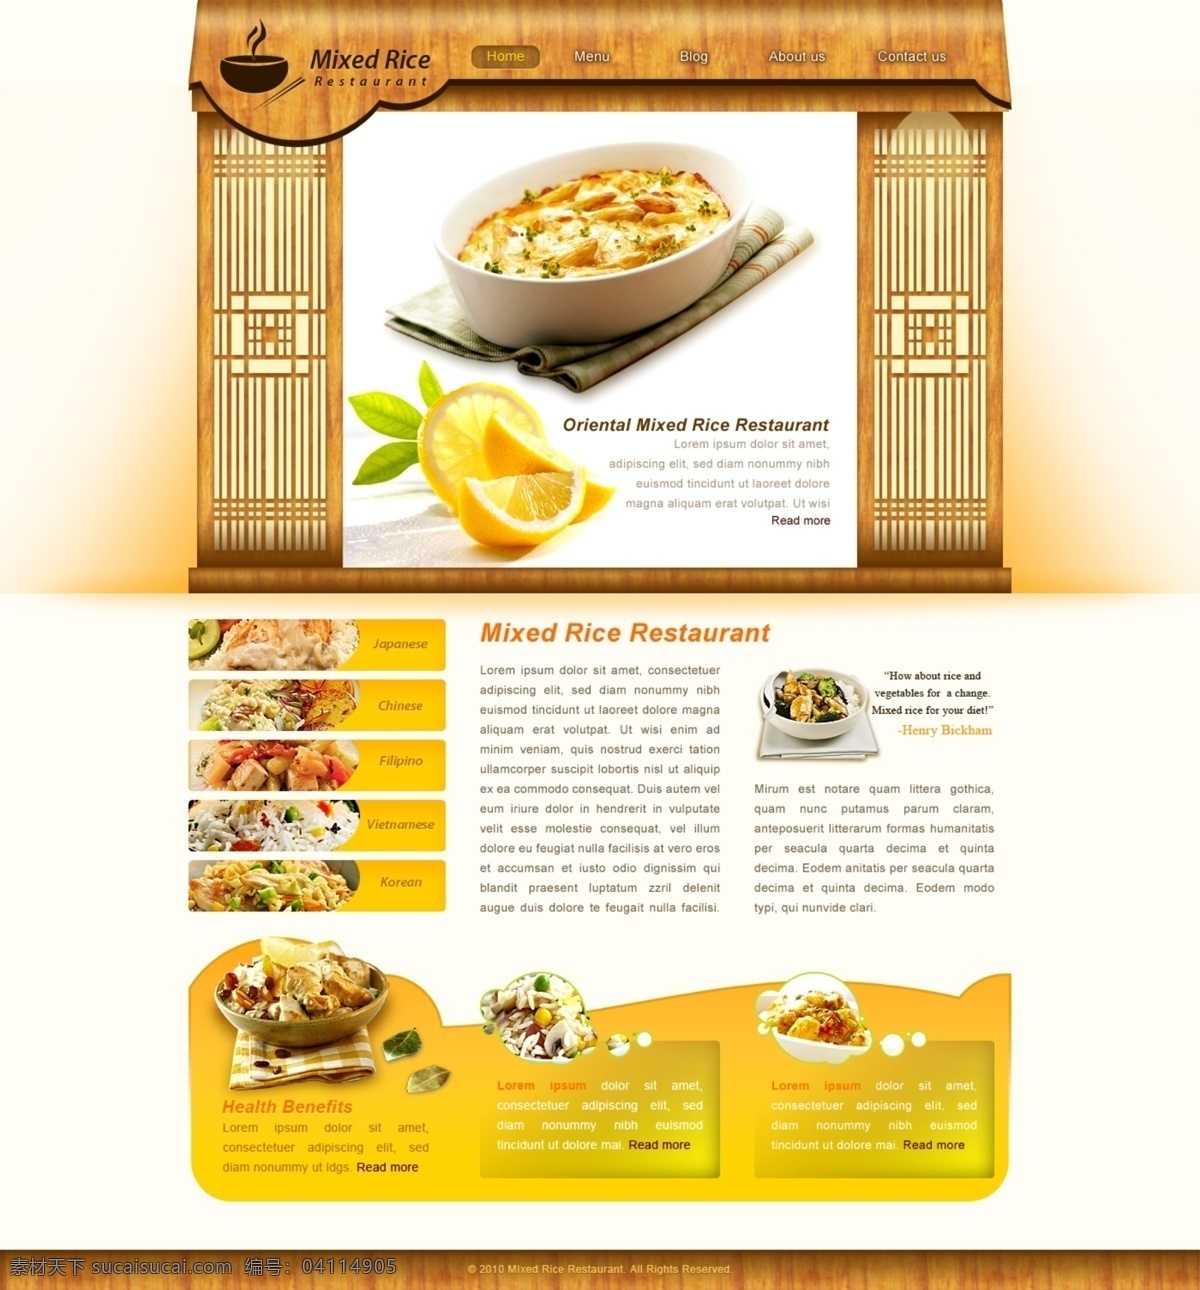 暖色 订餐 网站 食品网站 网页模板 网页素材 暖色订餐网站 黄色订餐网站 国外订餐网站